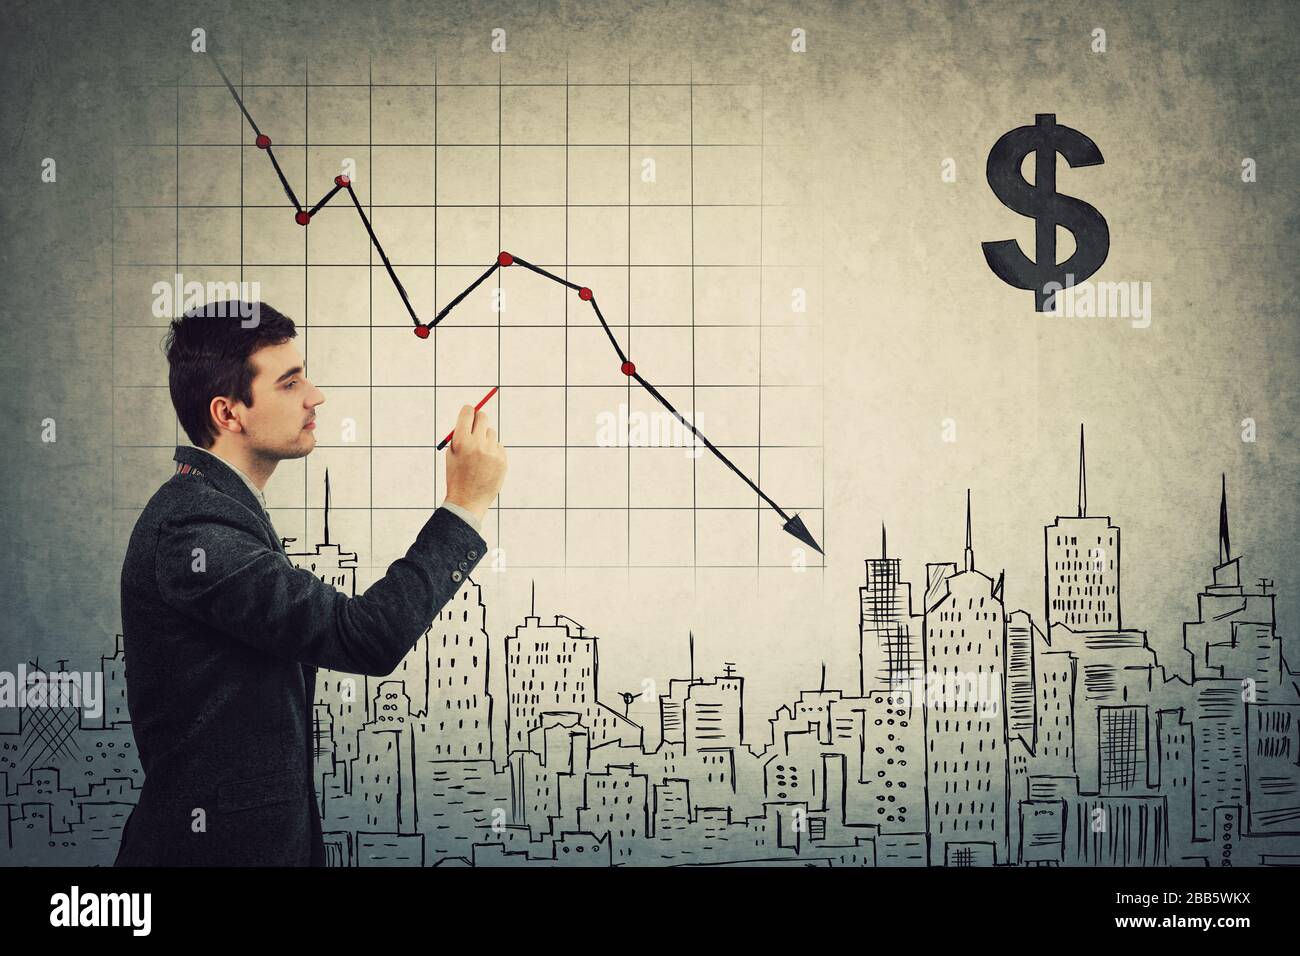 L'analista degli uomini d'affari fornisce la prognosi pessimistica dell'impatto di COVID-19 sull'economia mondiale futura, disegnando il grafico di declino del mercato azionario. Financ globale Foto Stock